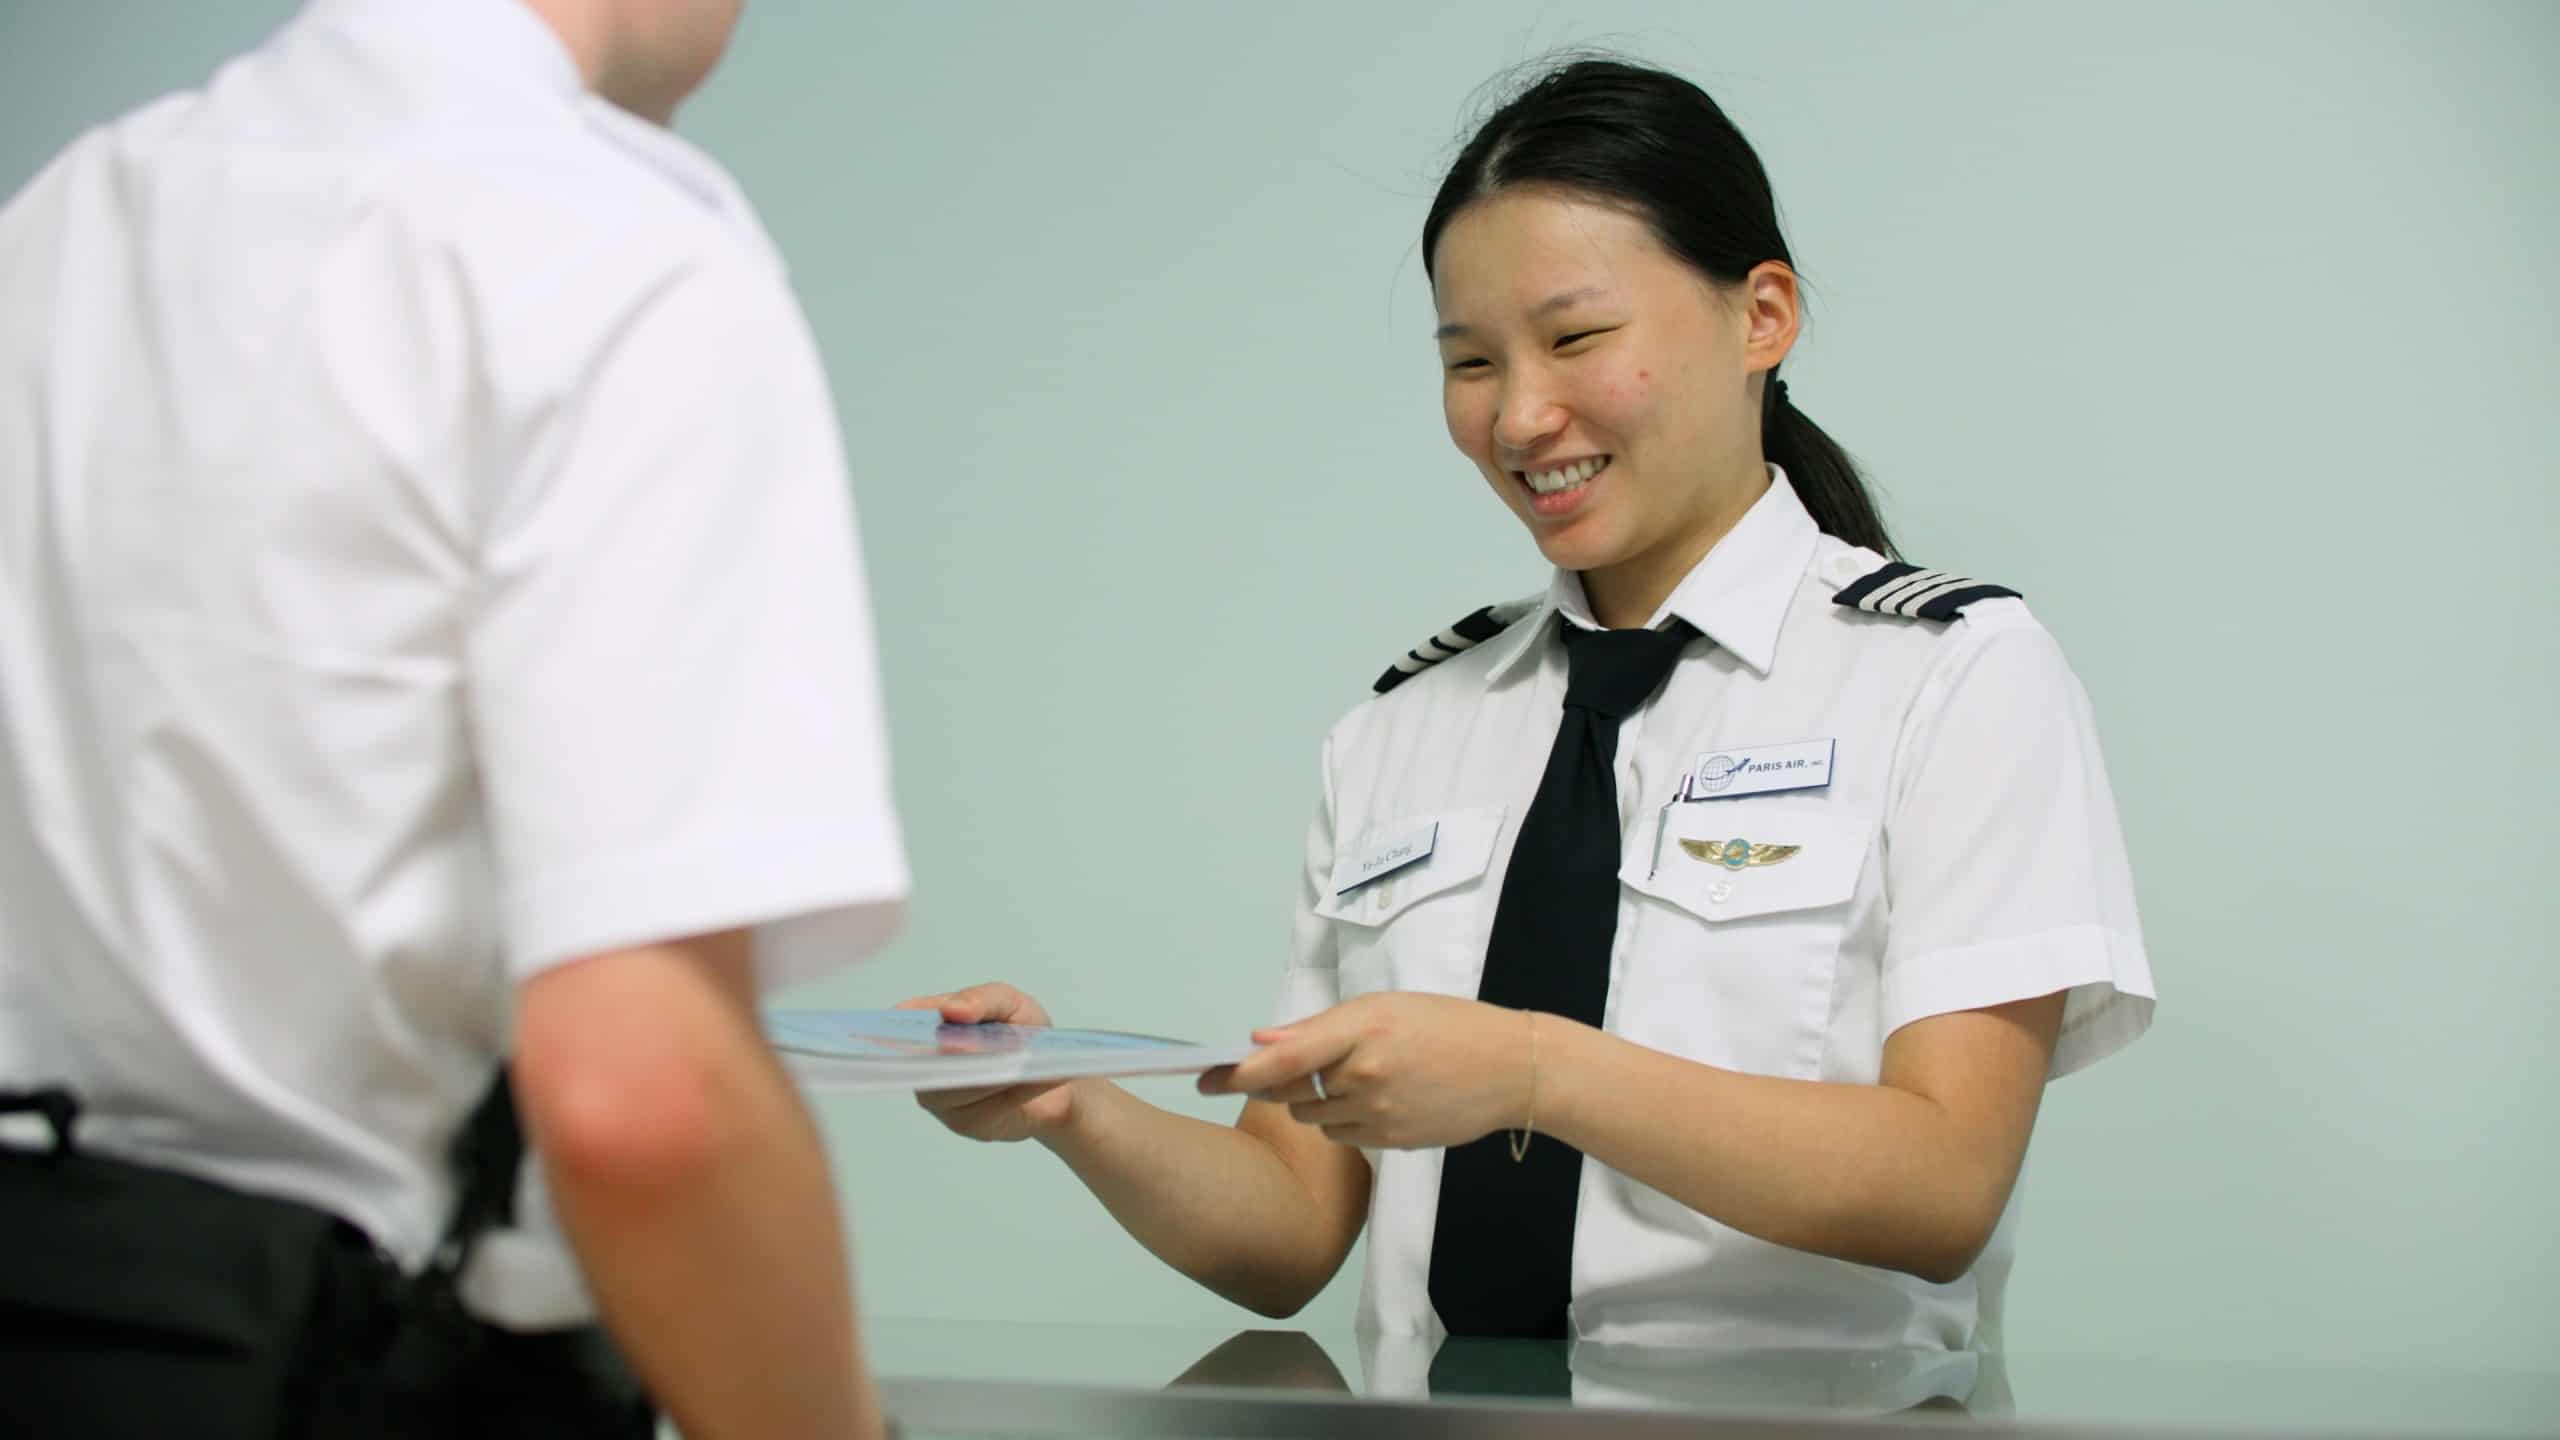 A clerk at the Paris Air Pilot Shop handing a book to a flight student